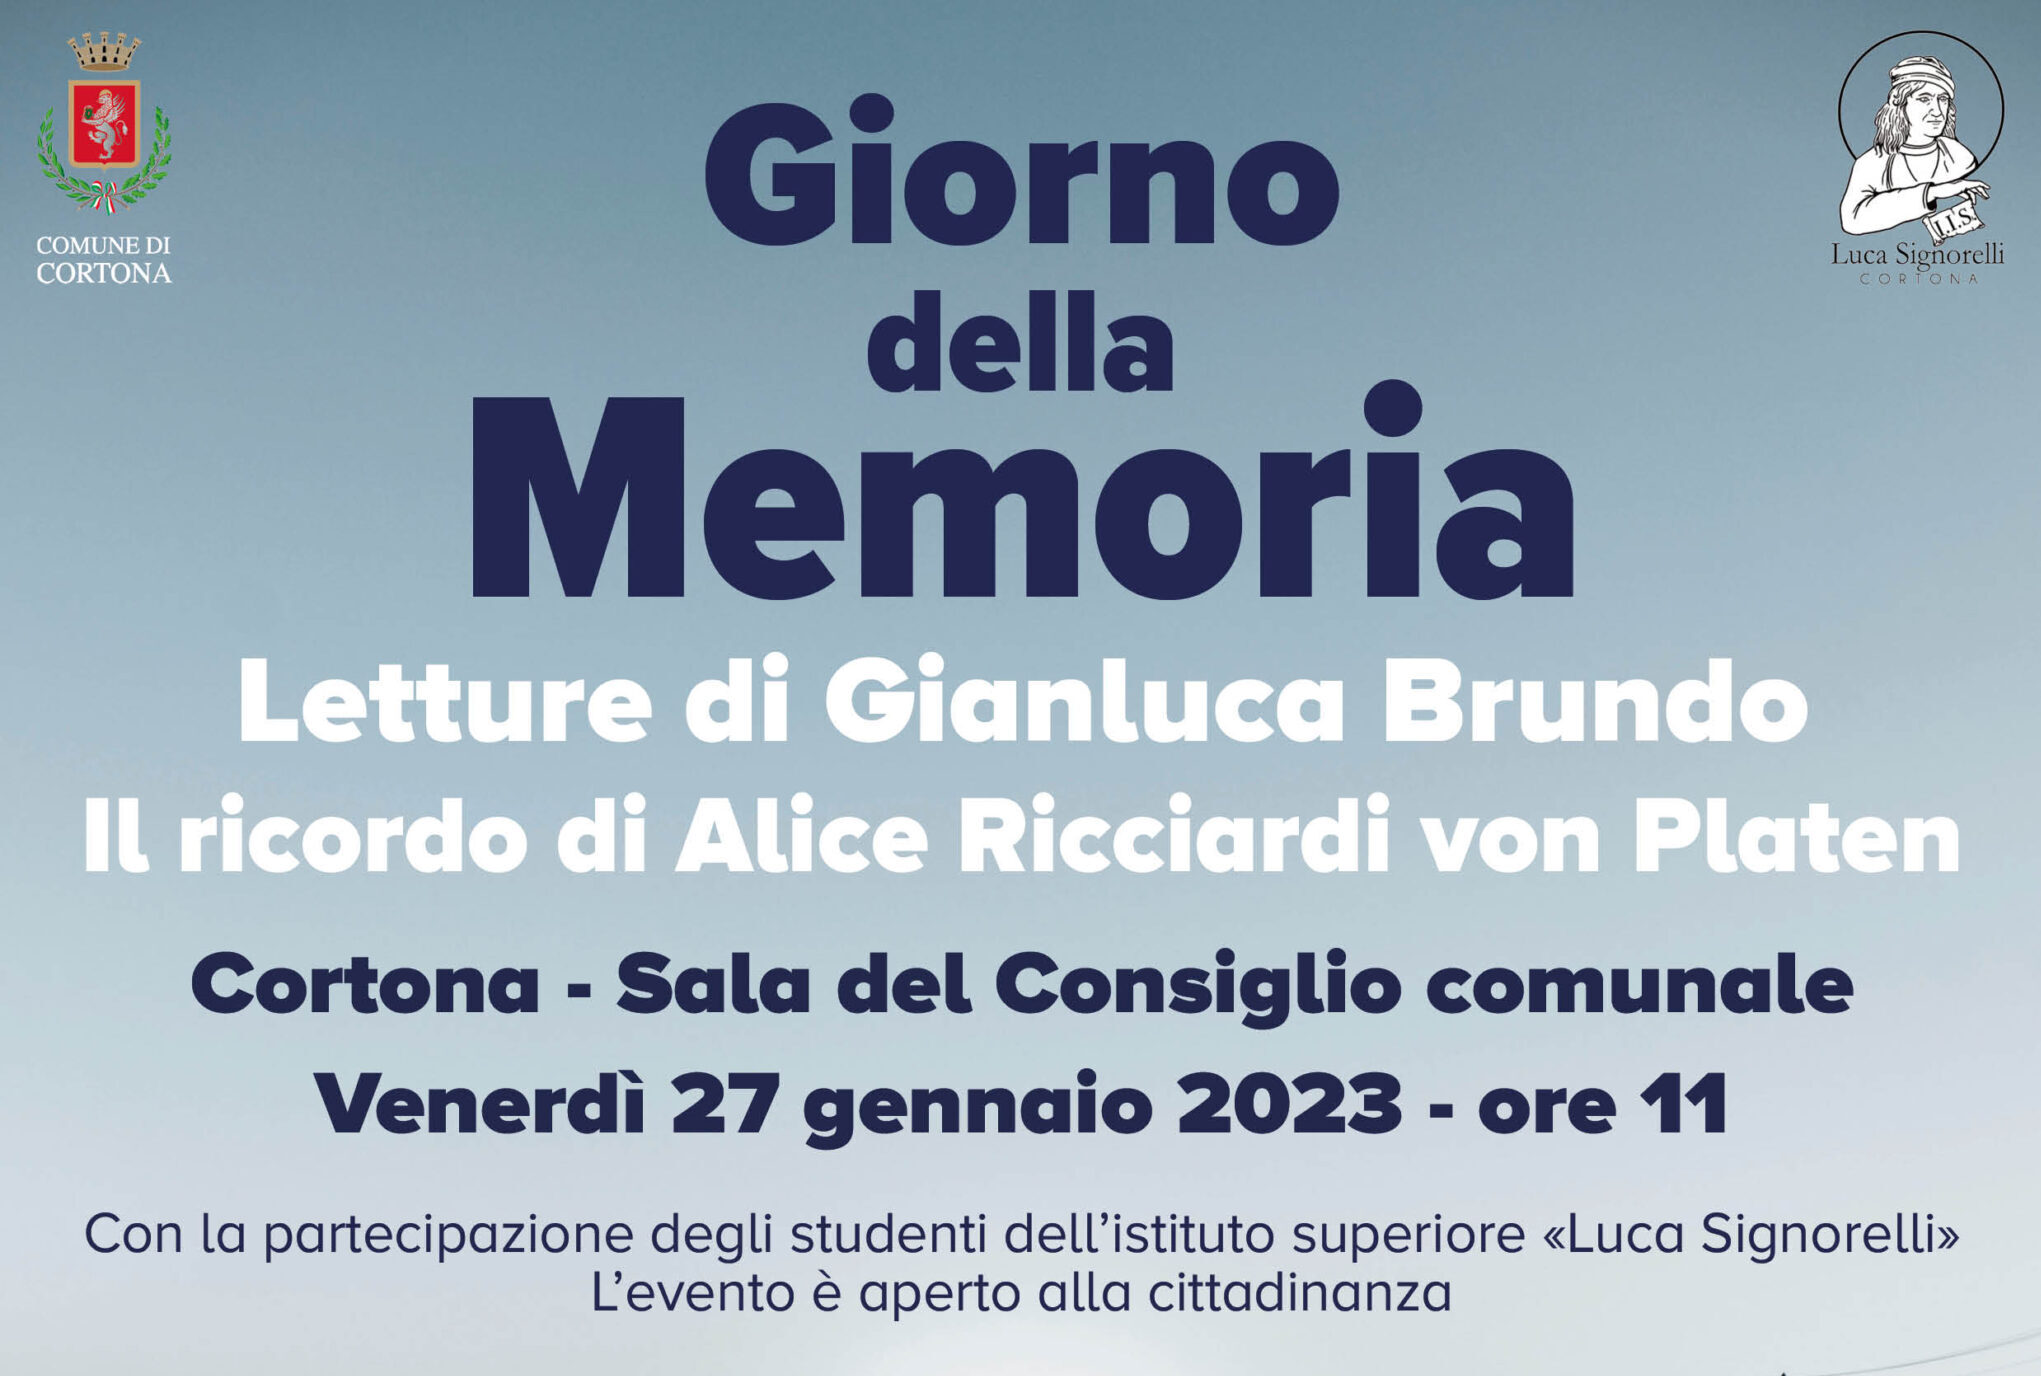 Cortona celebra il Giorno della Memoria con le letture di Gianluca Brundo e il ricordo di Alice Ricciardi von Platen